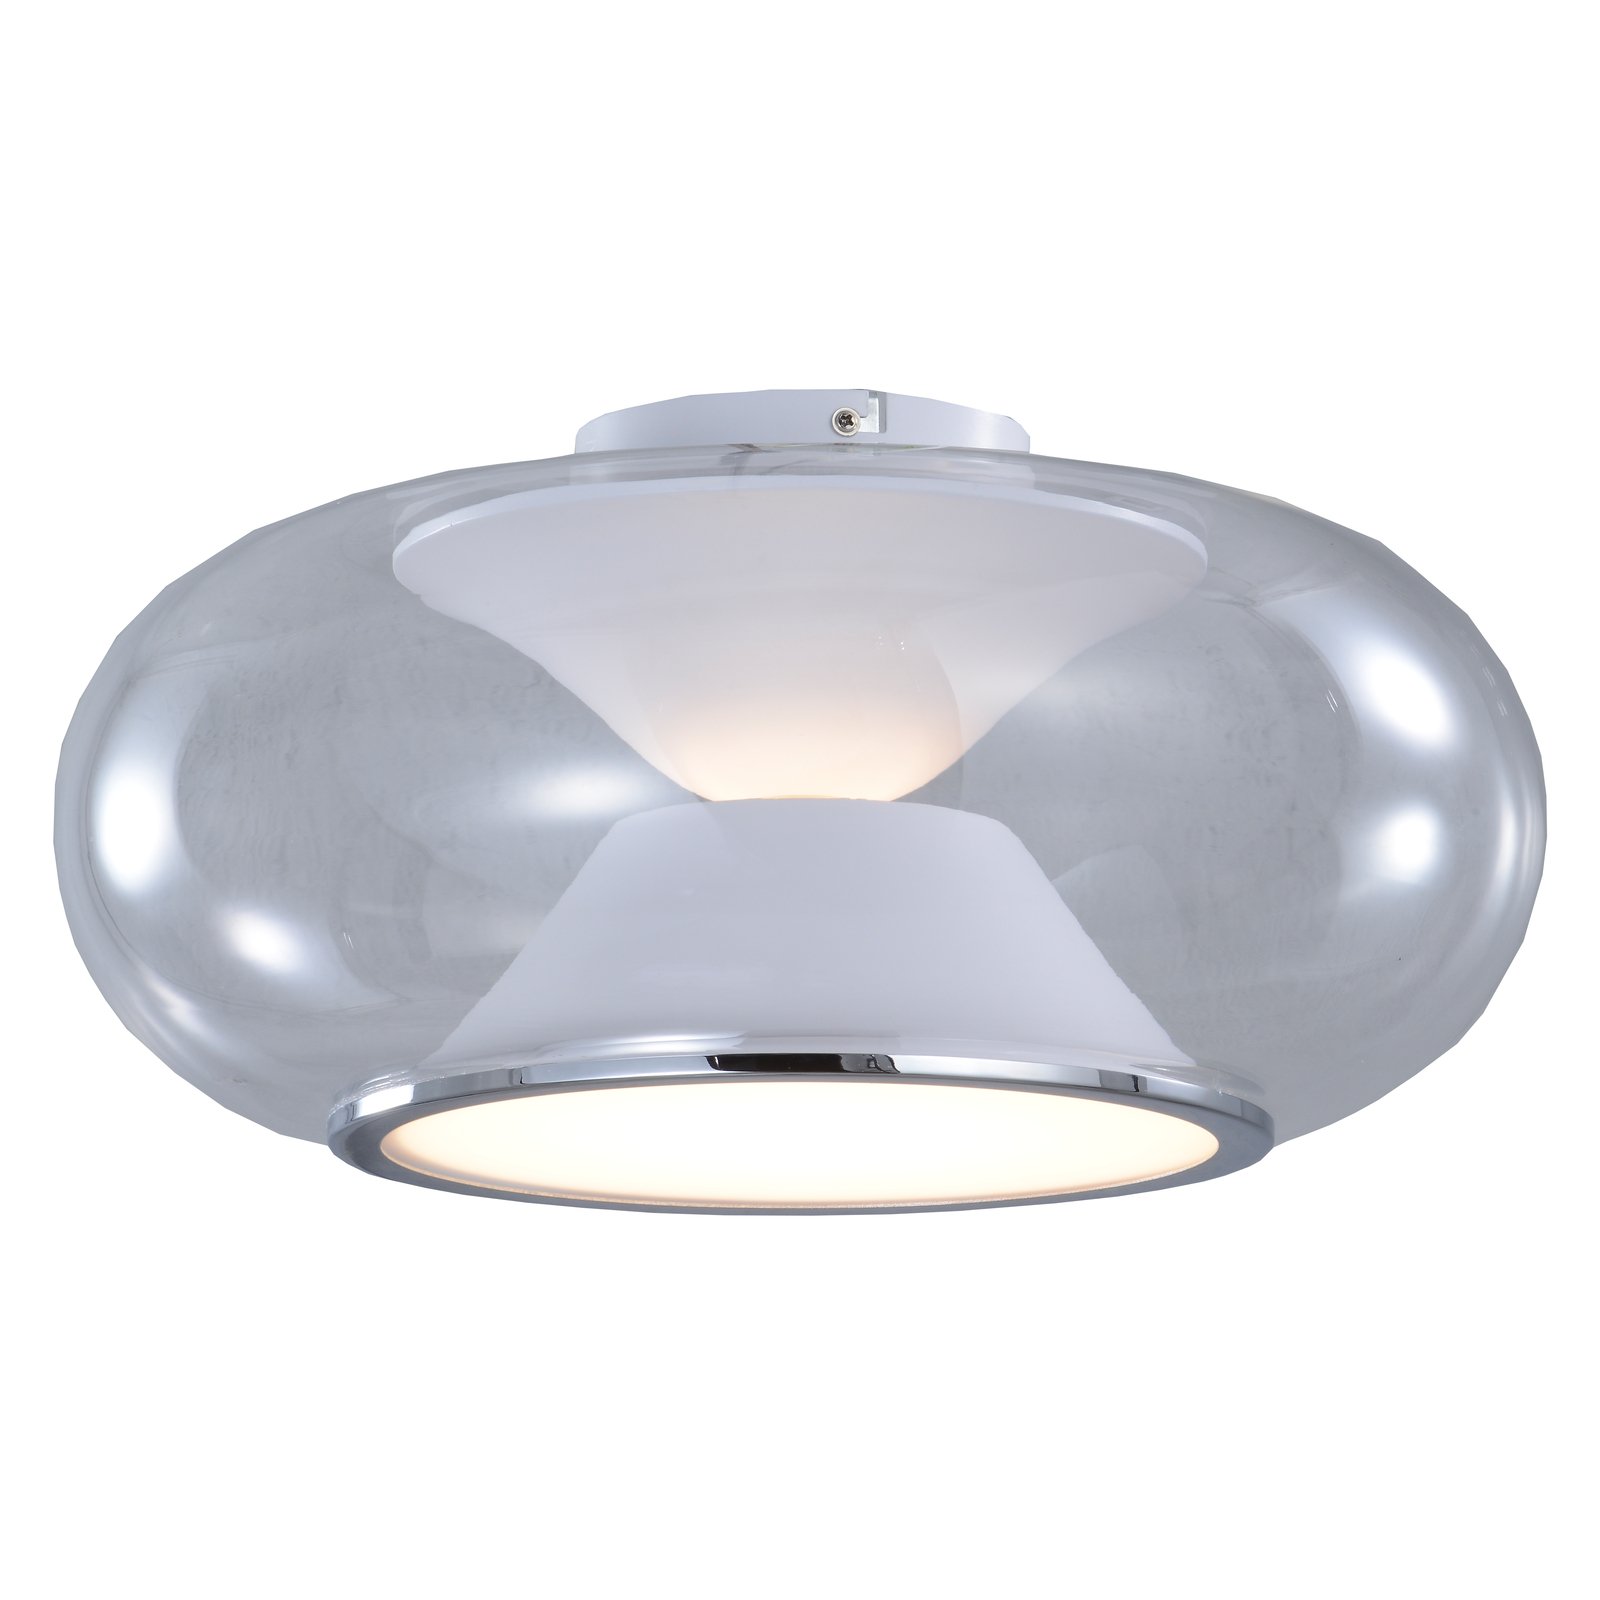 Lucande LED-Deckenleuchte Orasa, Glas, weiß/klar, Ø 43 cm